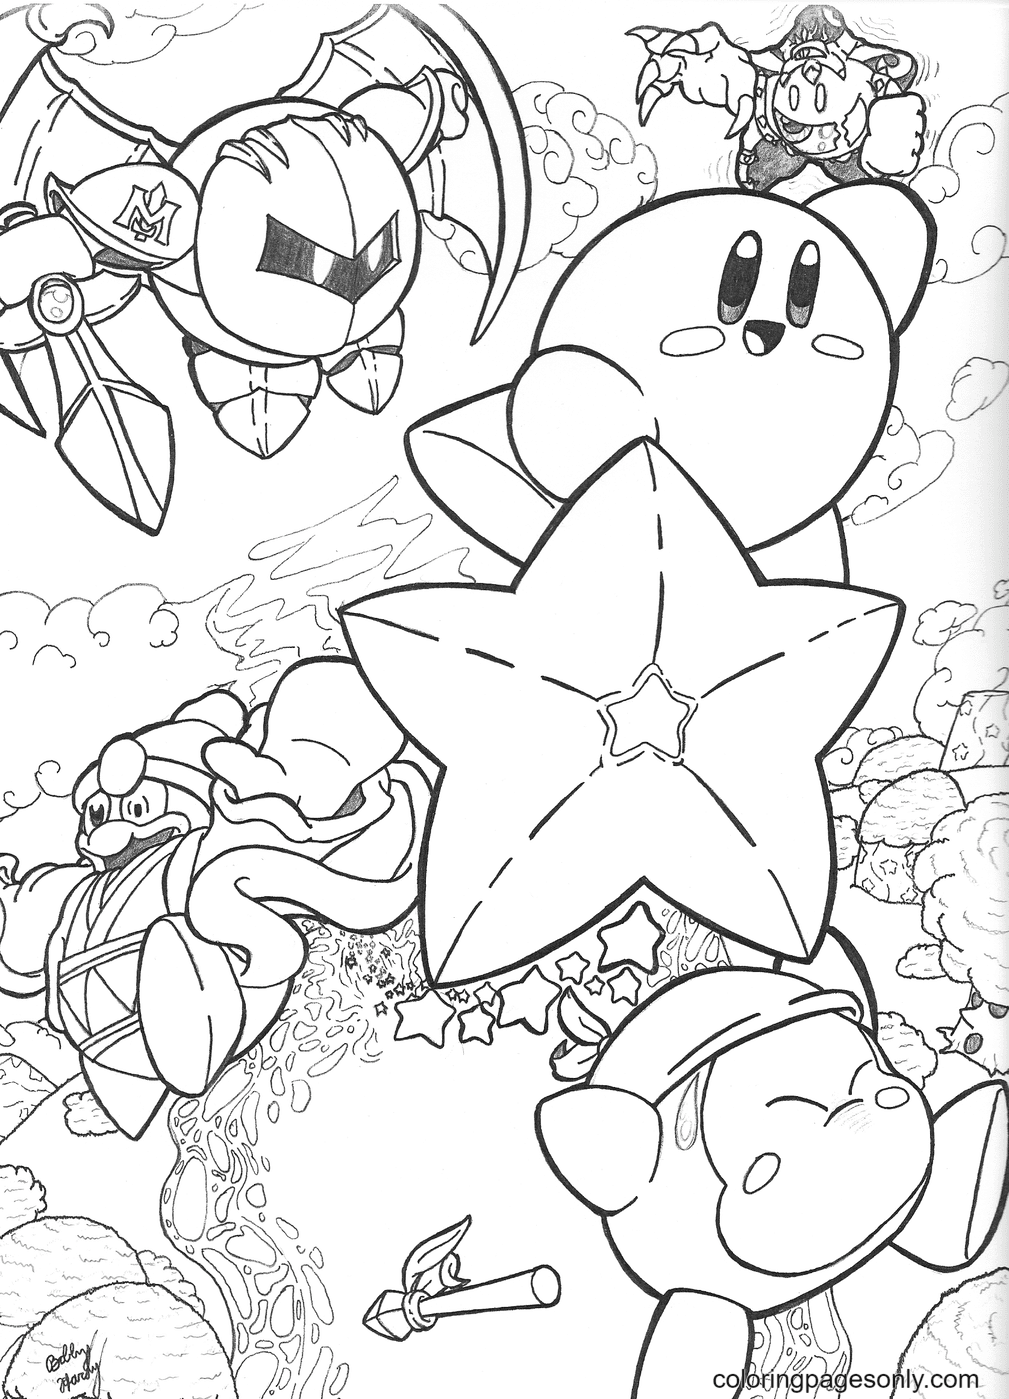 Kirby bravo guerreiro de Kirby